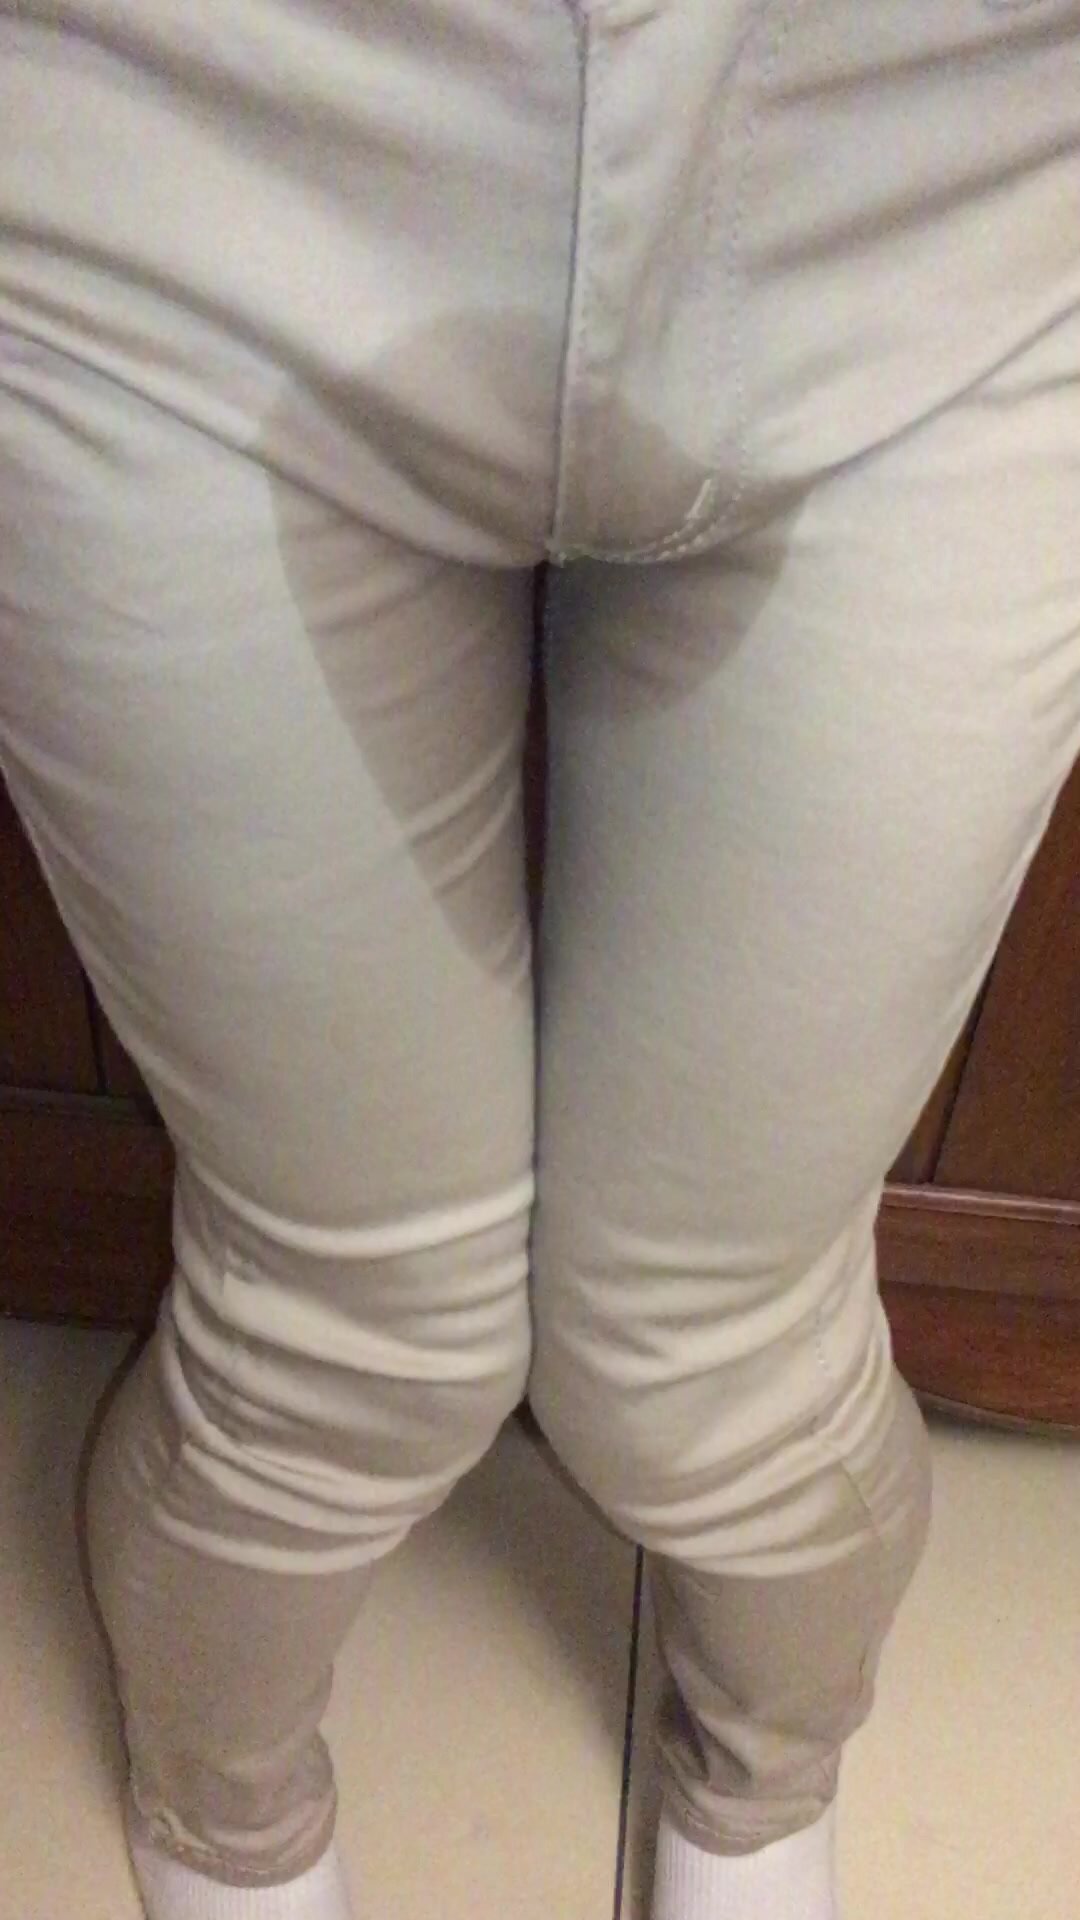 Asian bottom pissing skinny jeans (part 1)